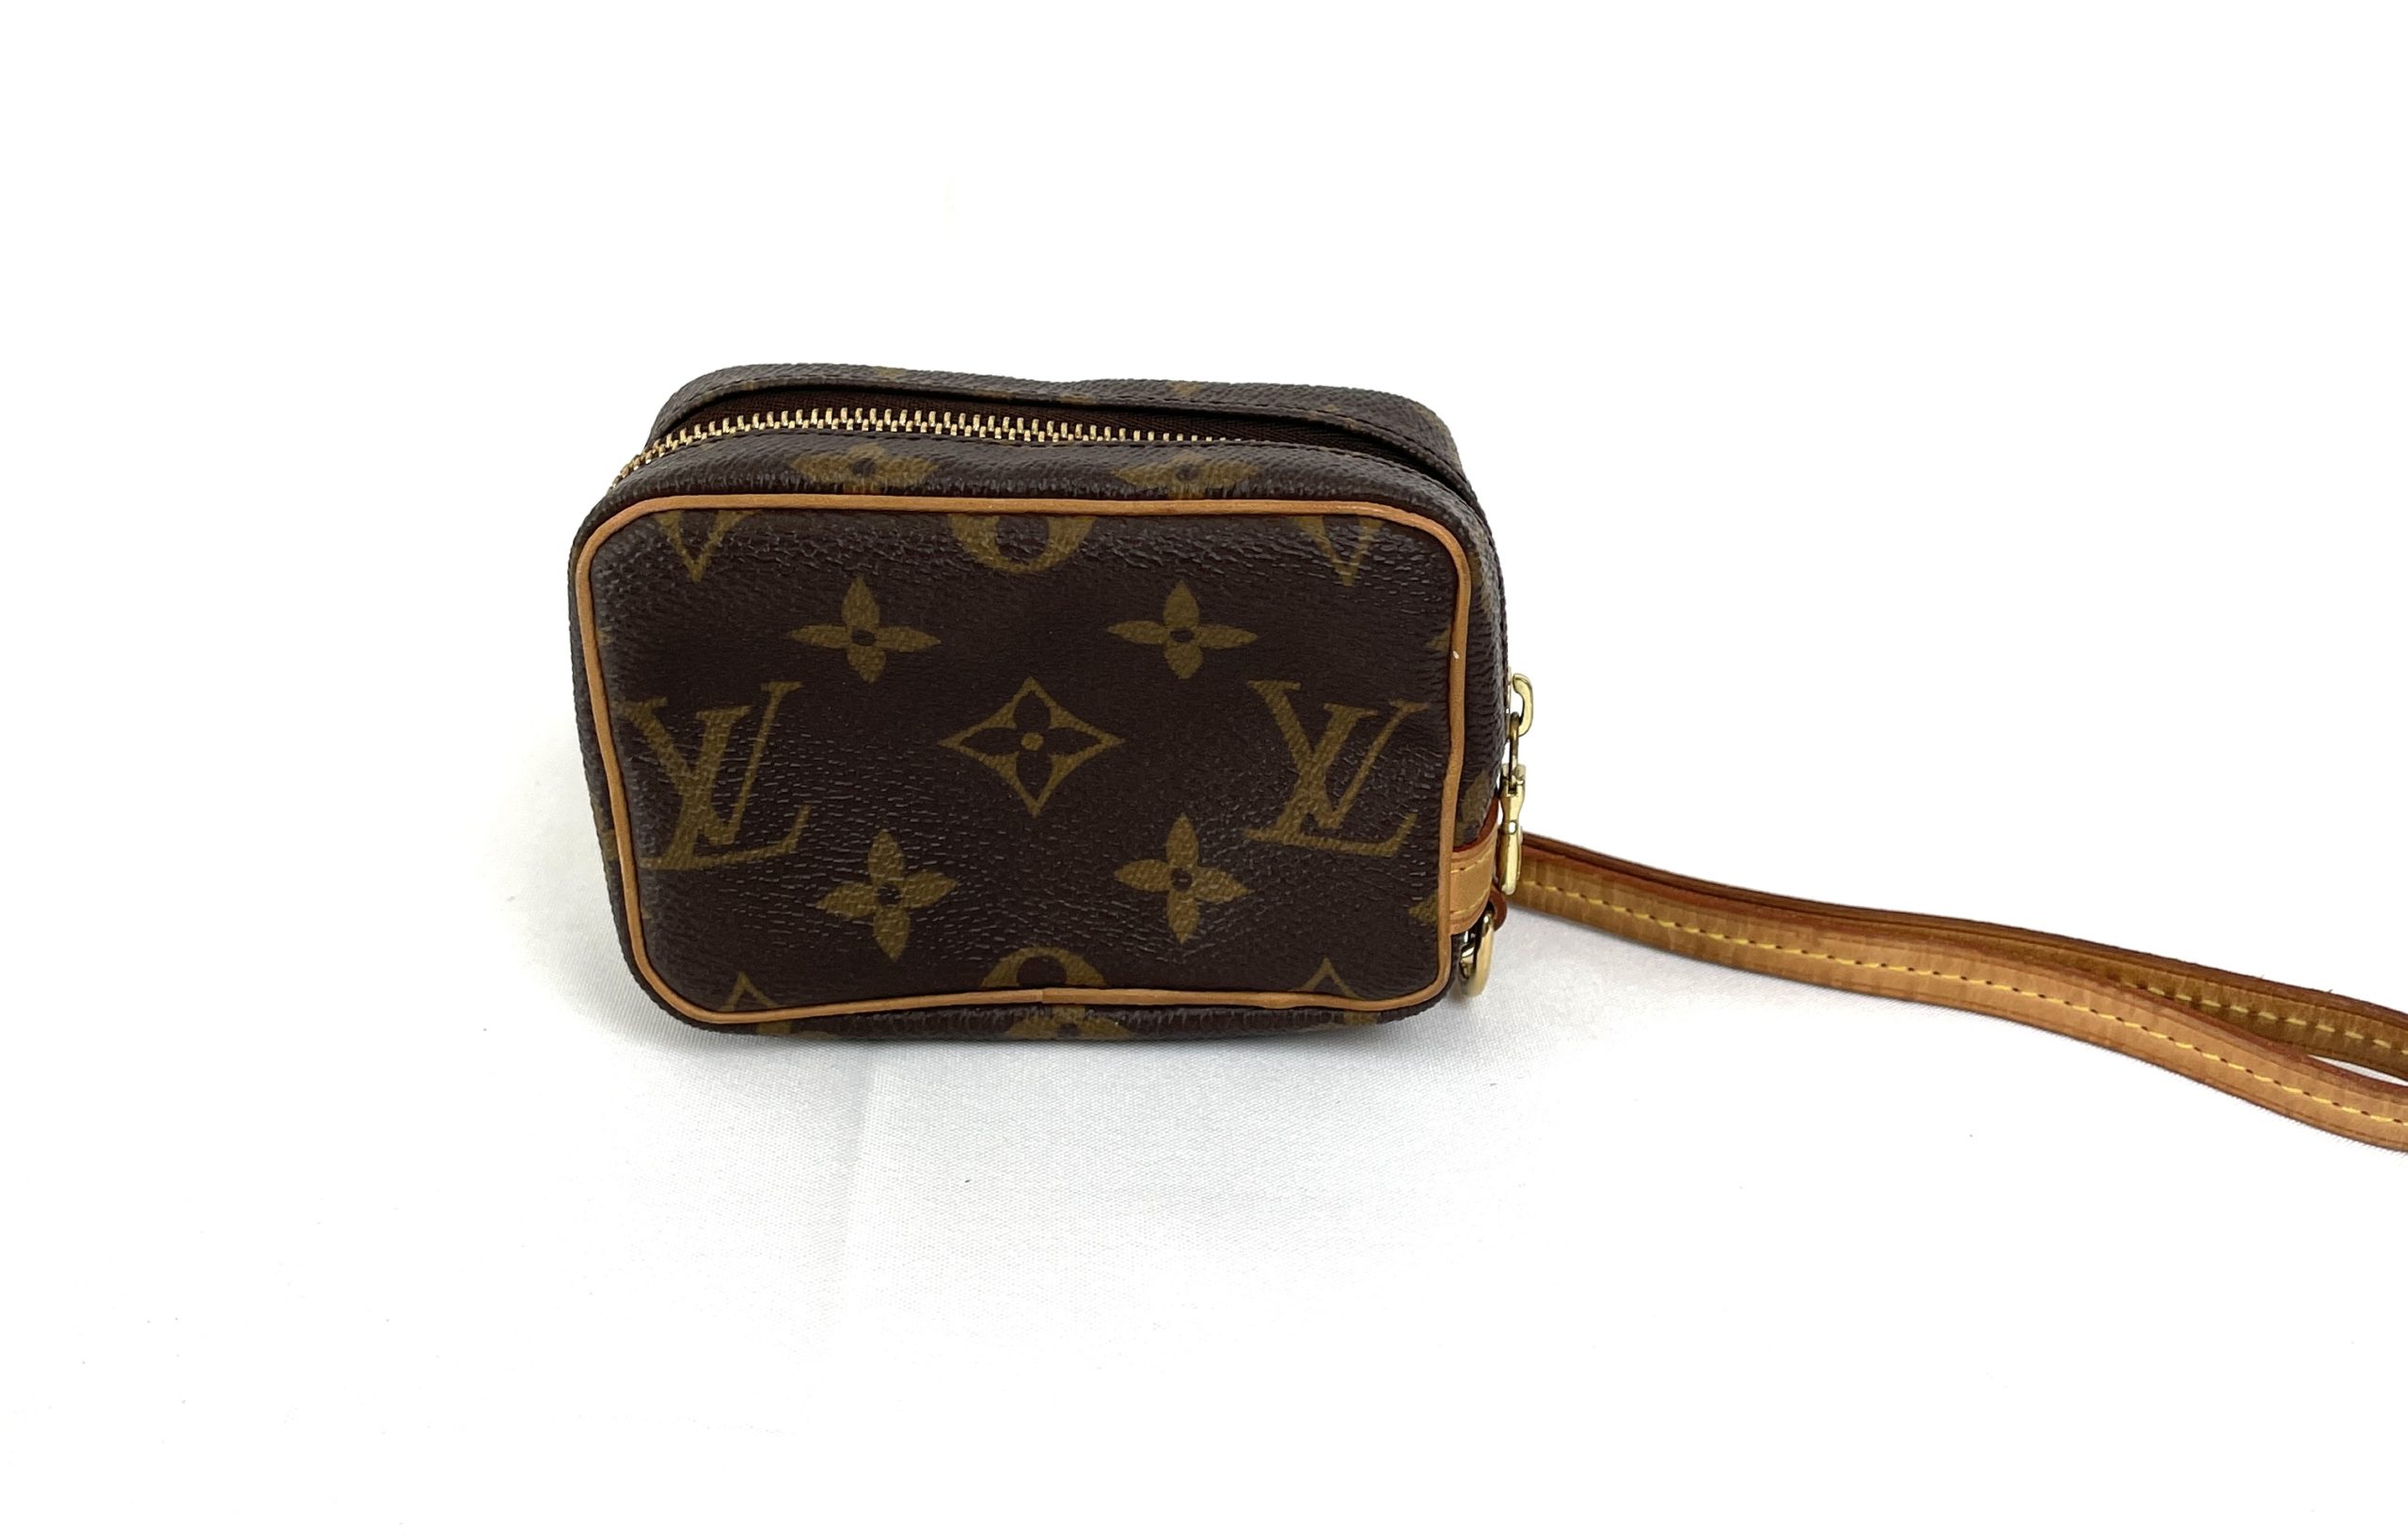 Auth LOUIS VUITTON Trousse Wapity Pouch Wristlet Bag M58030 Monogram  #W601043